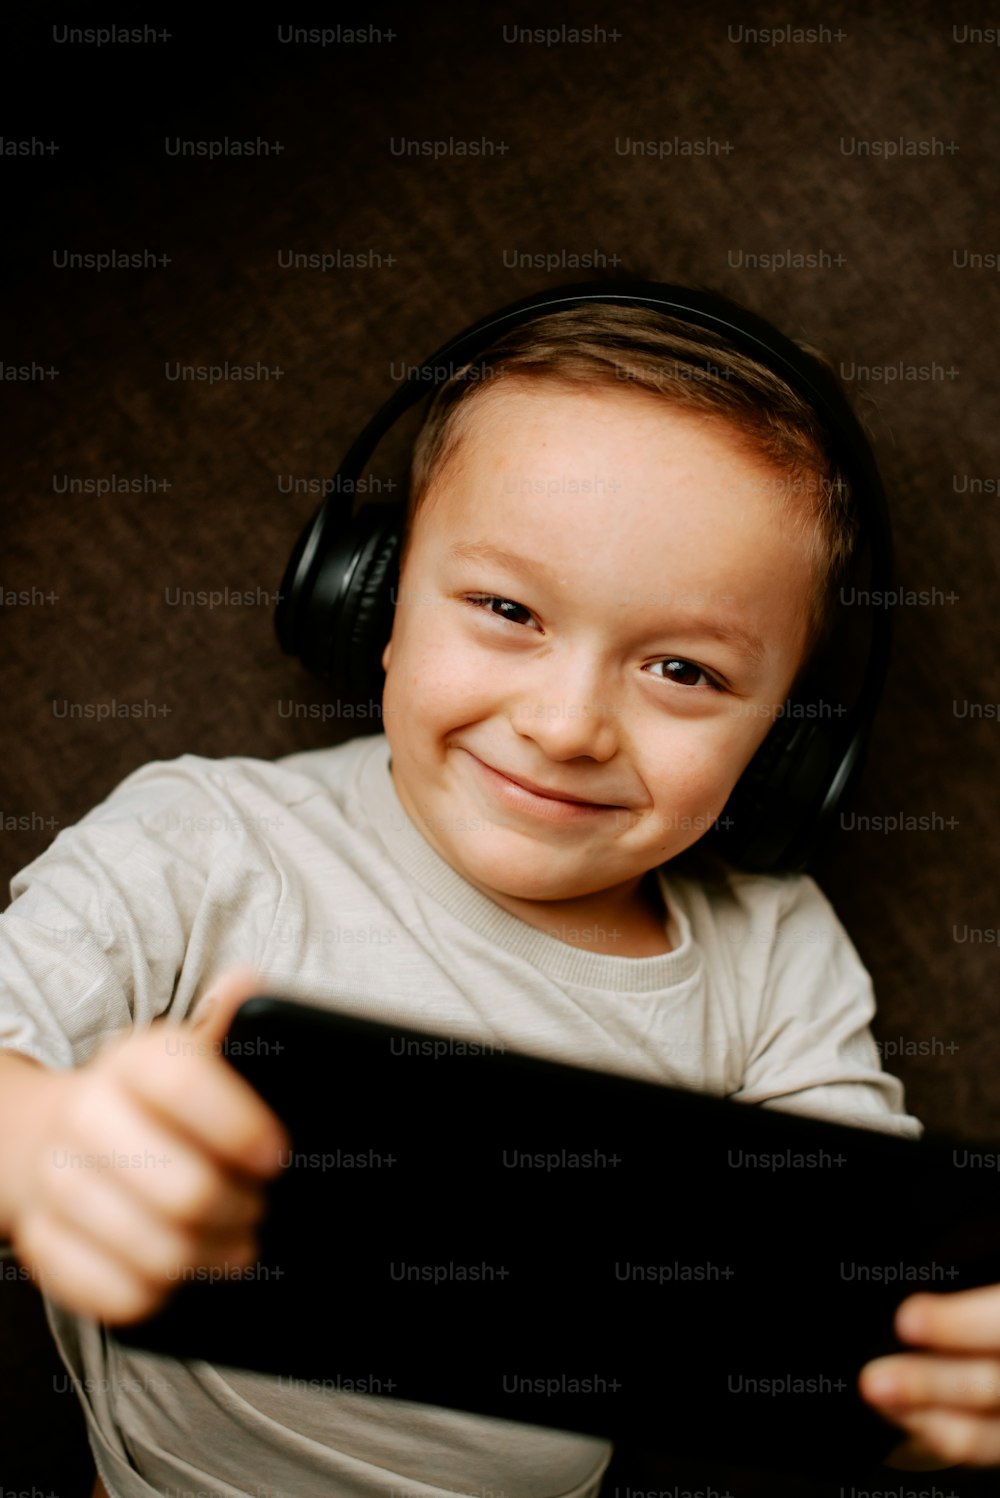 Un jeune garçon portant des écouteurs et tenant une tablette